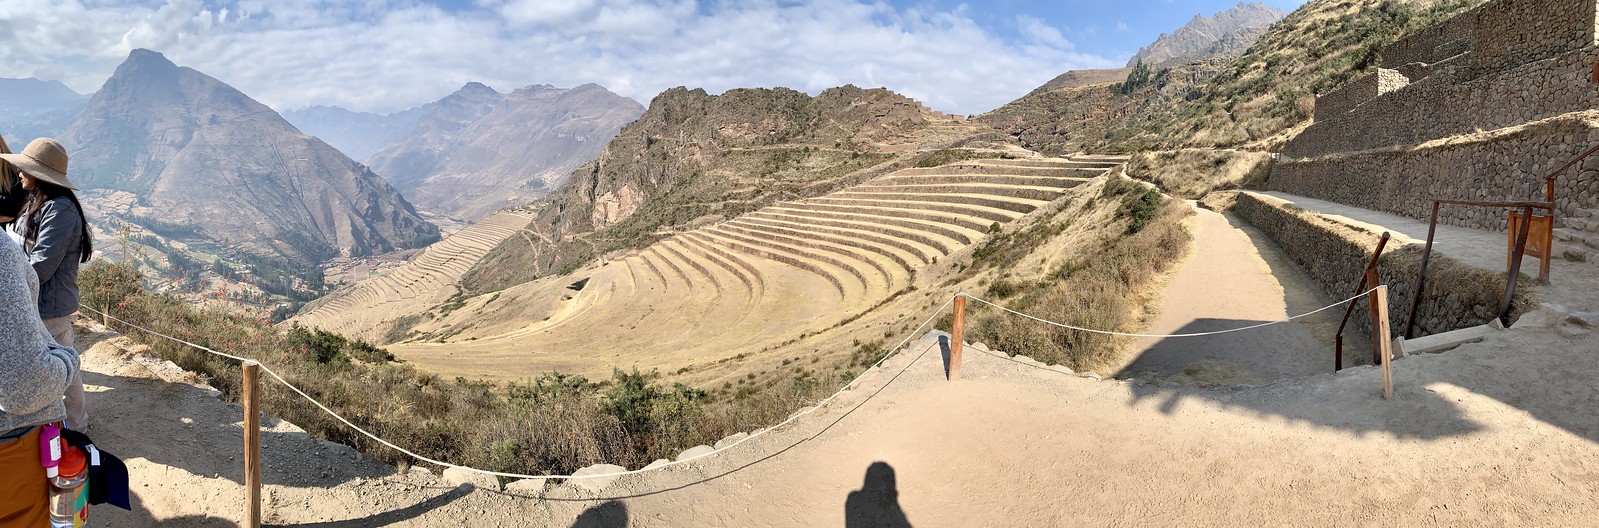 2019_EXPD_Machu Picchu 41